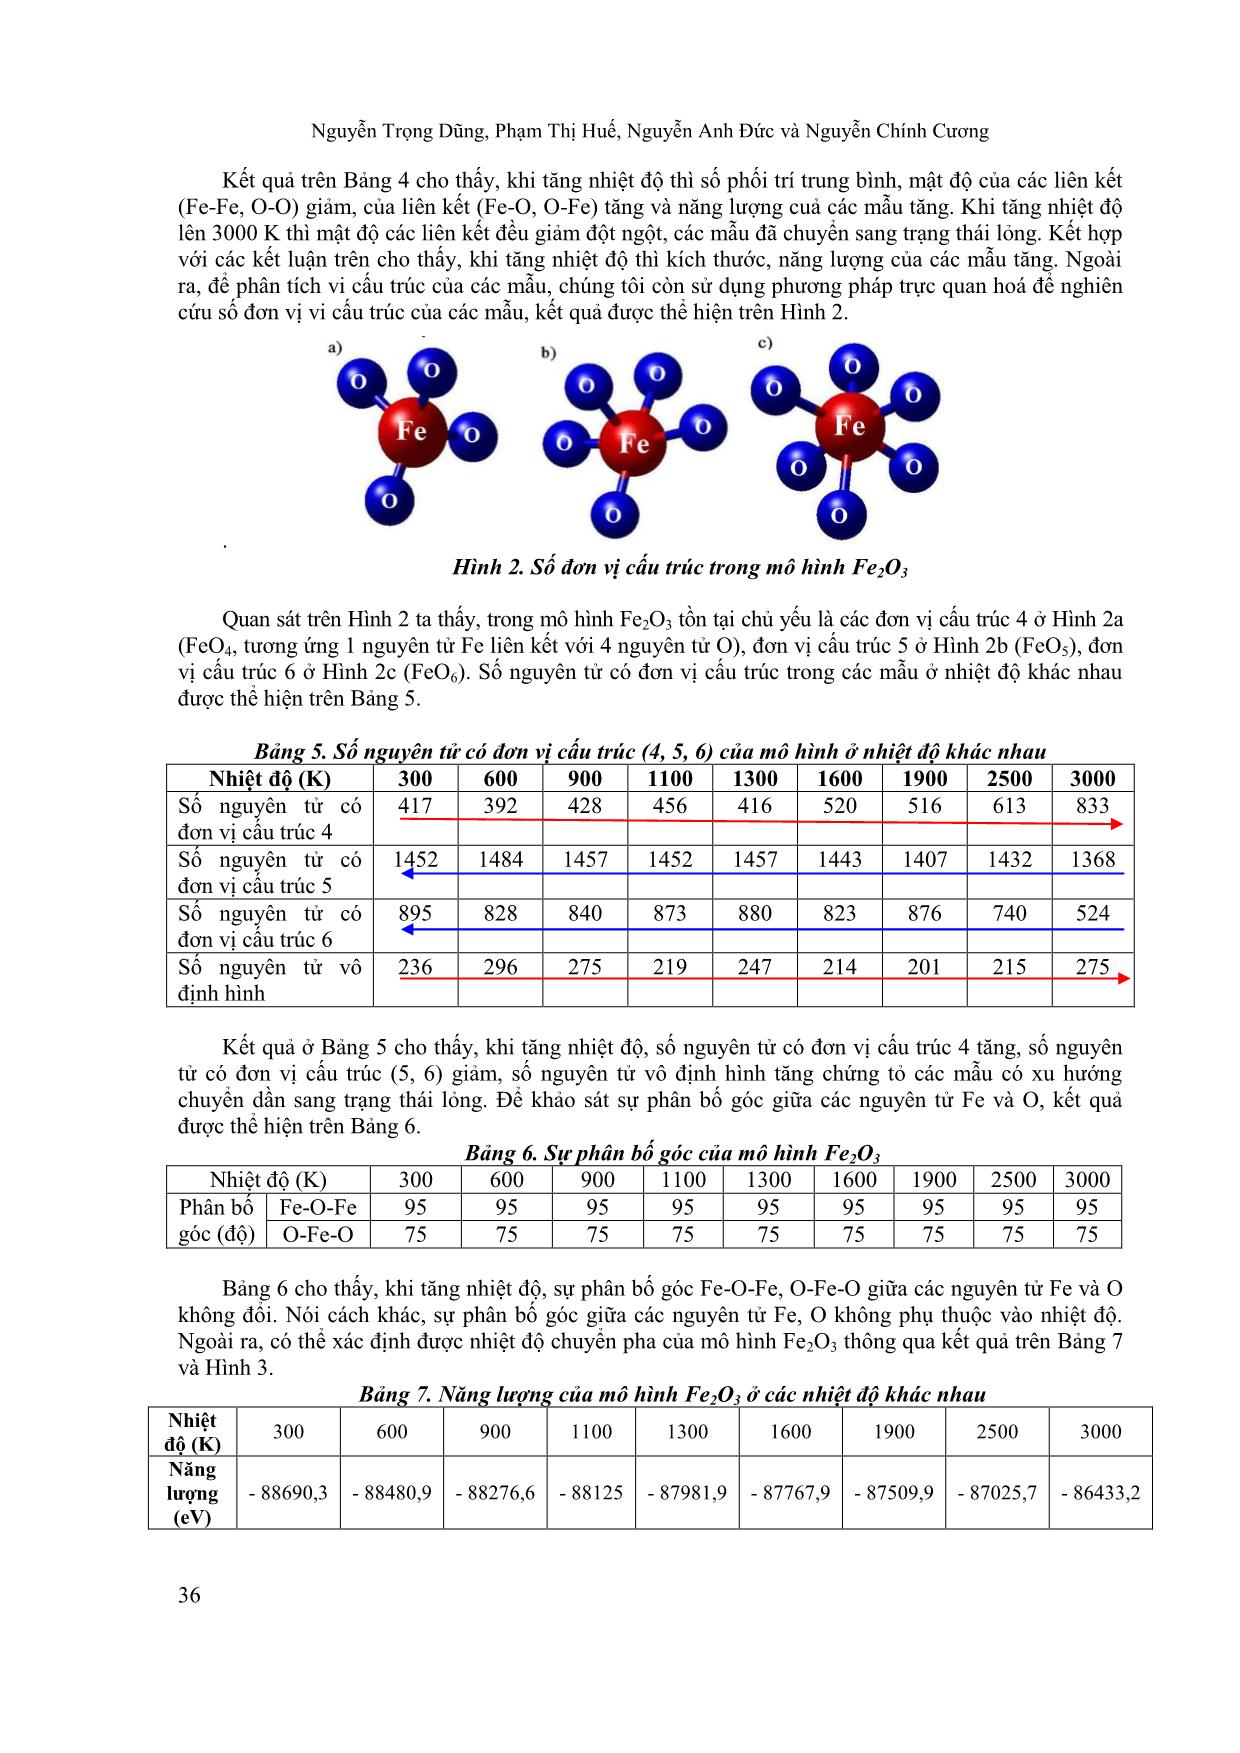 Ảnh hưởng của nhiệt độ lên vi cấu trúc và cơ chế khuếch tán của mô hình khối Fe2O3 bằng phương pháp động lực học phân tử trang 4